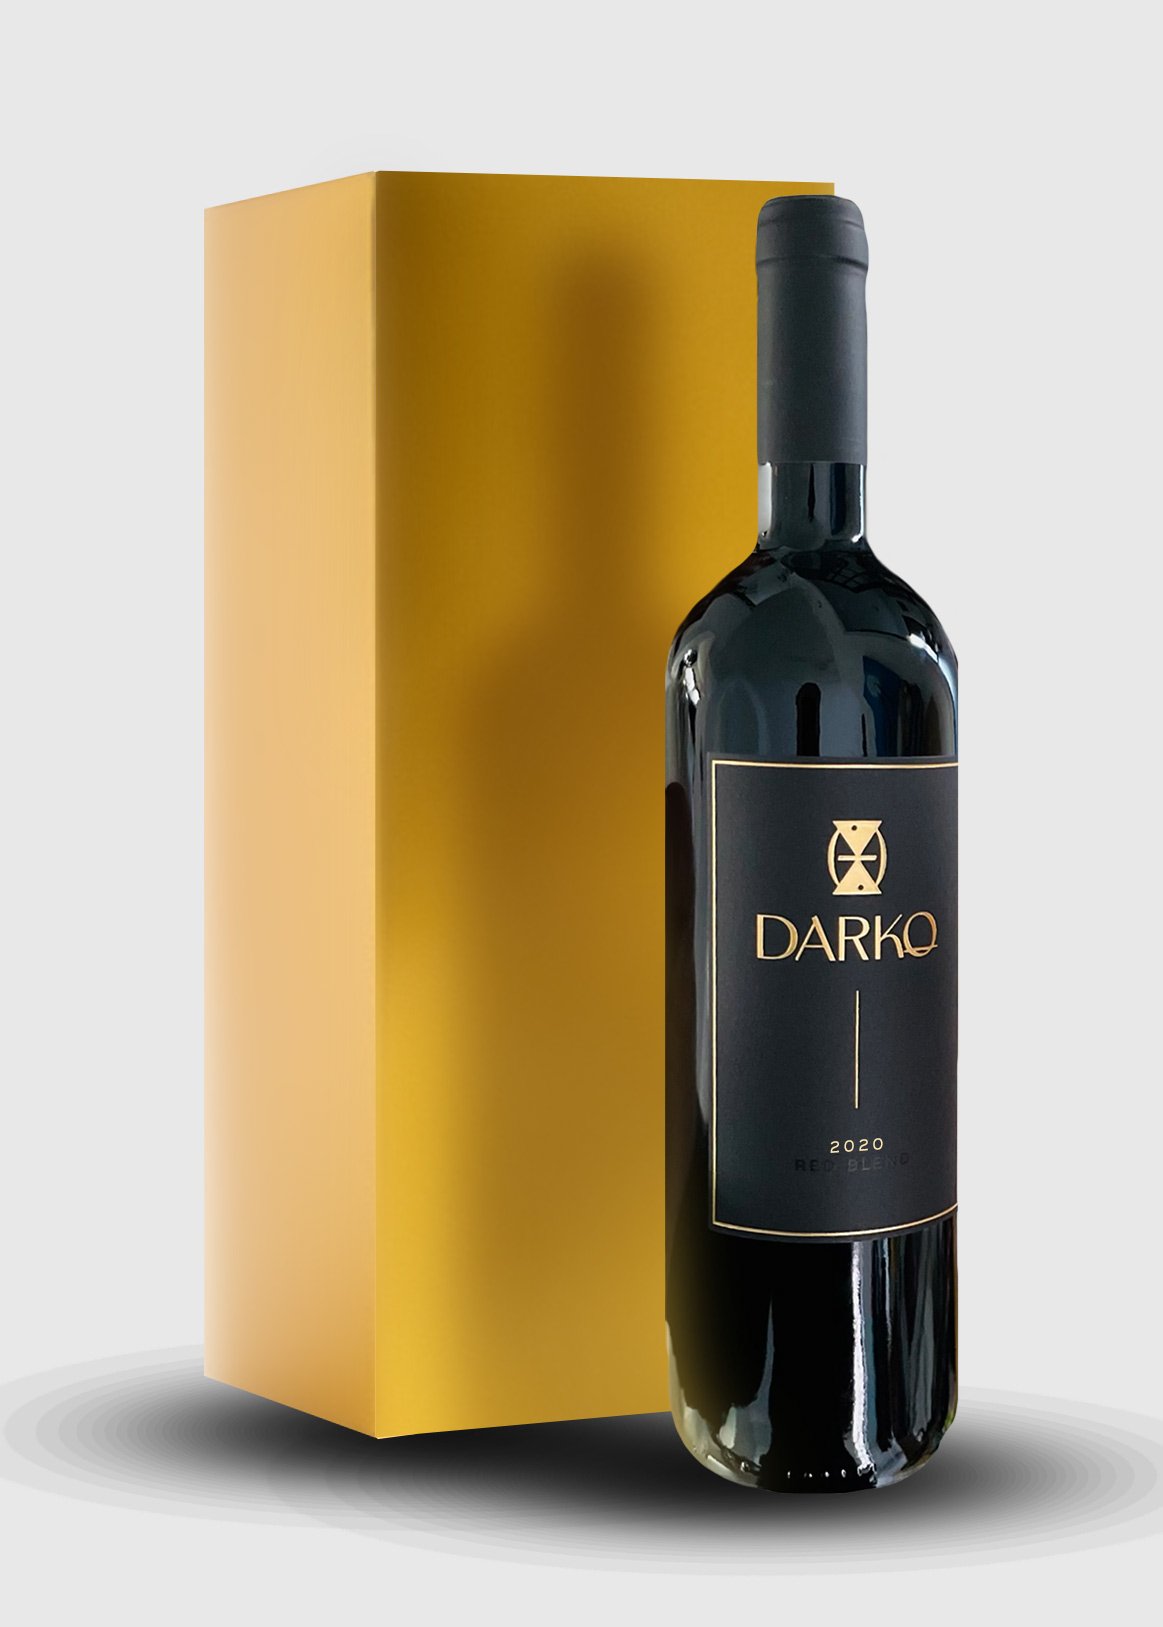 Set 2020 — Reserve Bottle Red 3 Wines Blend Darko Darko - Wines